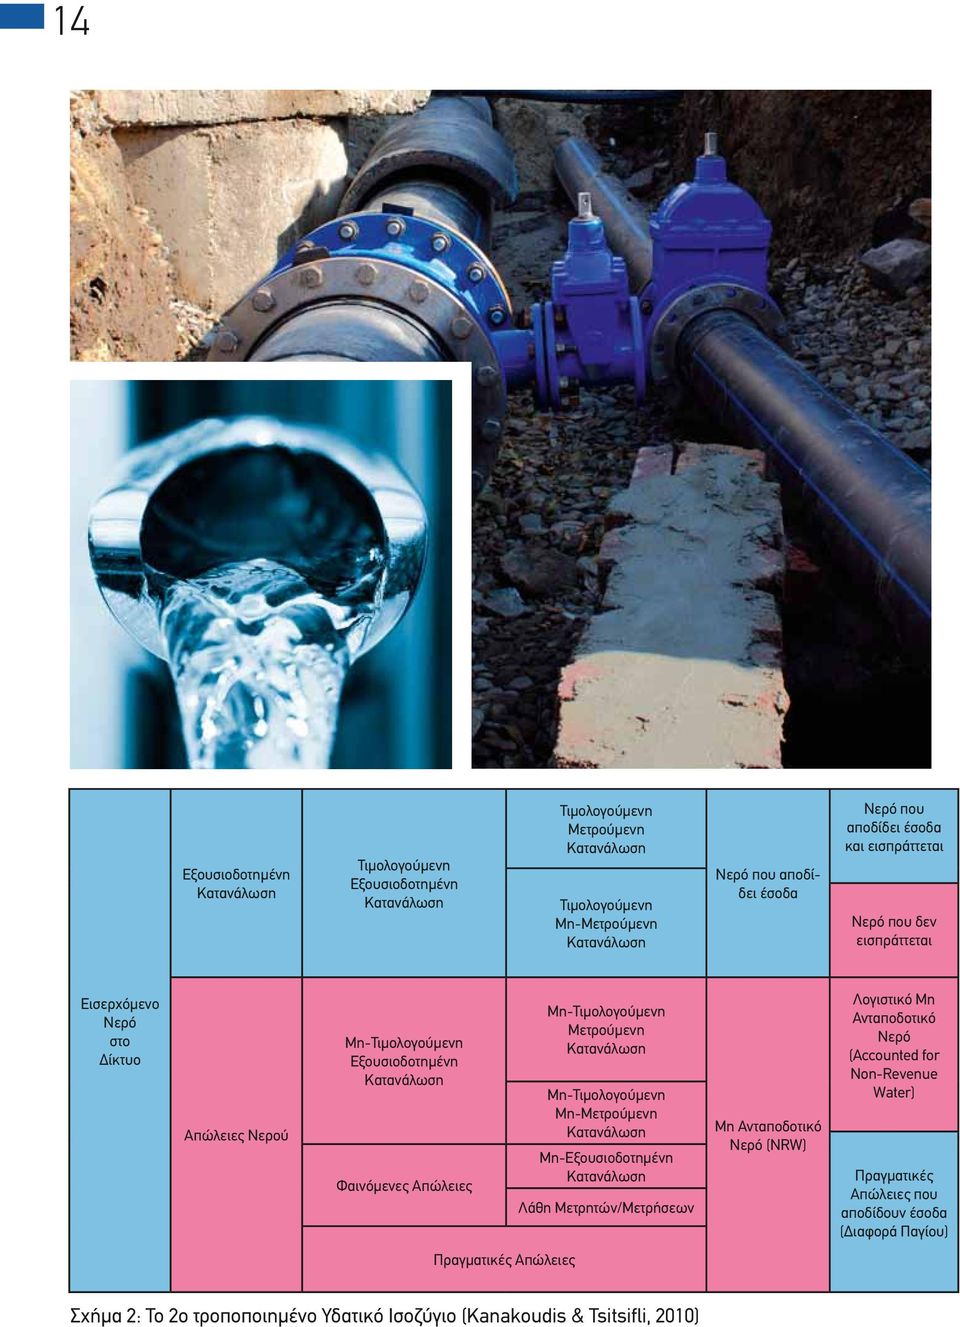 Μετρούμενη Κατανάλωση Μη-Τιμολογούμενη Mη-Μετρούμενη Κατανάλωση Μη-Εξουσιοδοτημένη Κατανάλωση Λάθη Μετρητών/Μετρήσεων Μη Ανταποδοτικό Νερό (NRW) Λογιστικό Μη Ανταποδοτικό Νερό